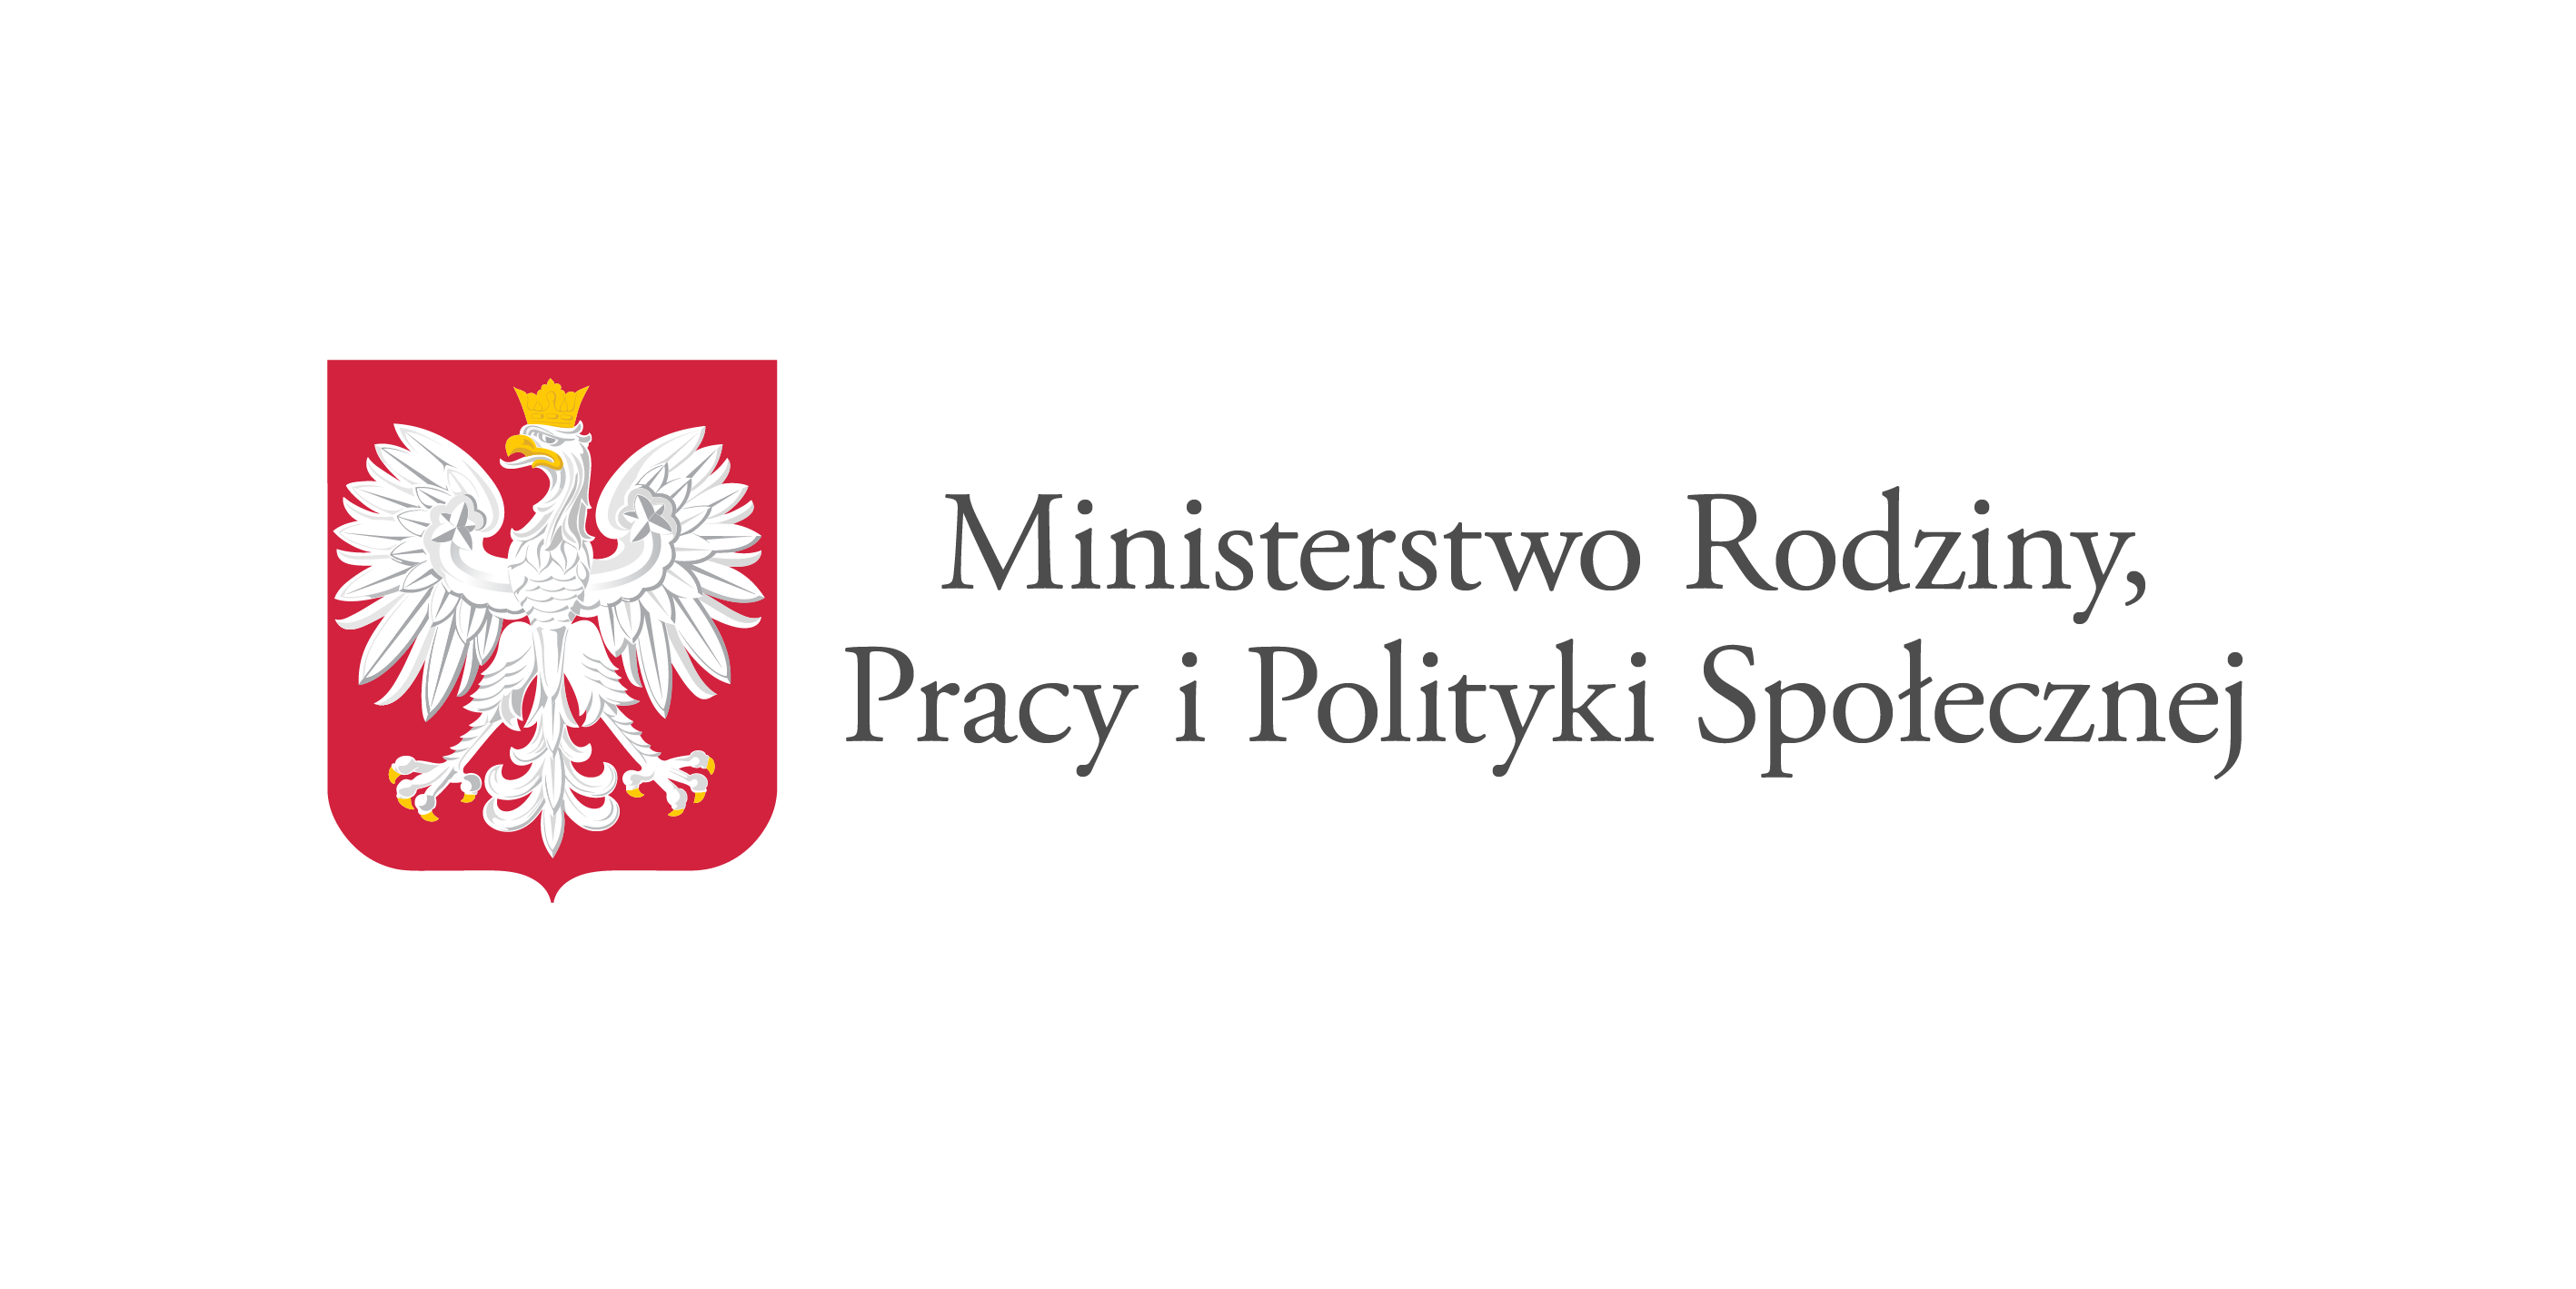 80 milionów złotych dla organizacji pozarządowych. Ministerstwo ogłasza start nowego programu